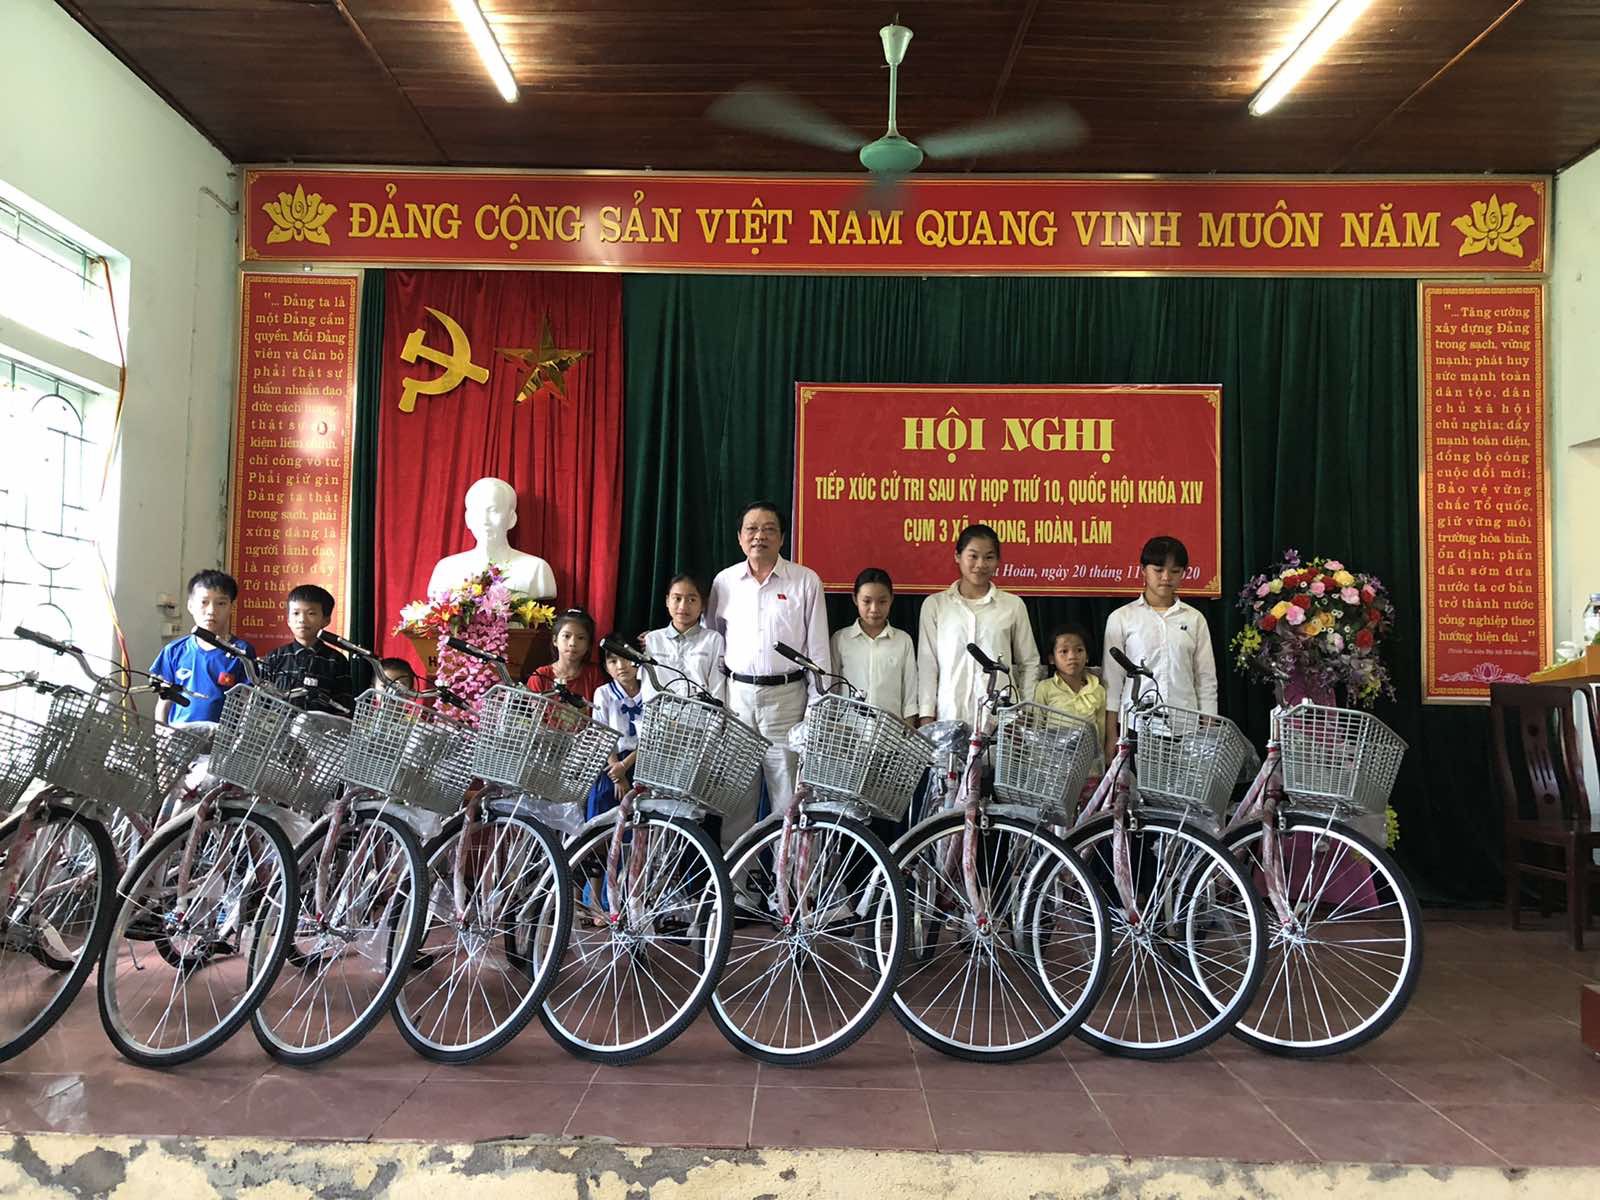 Đồng chí Phan Đình Trạc, Bí thư Trung ương Đảng, Trưởng Ban Nội chính Trung ương trao tặng xe đạp cho học sinh nghèo hiếu học huyện Quỳ Châu, tỉnh Nghệ An